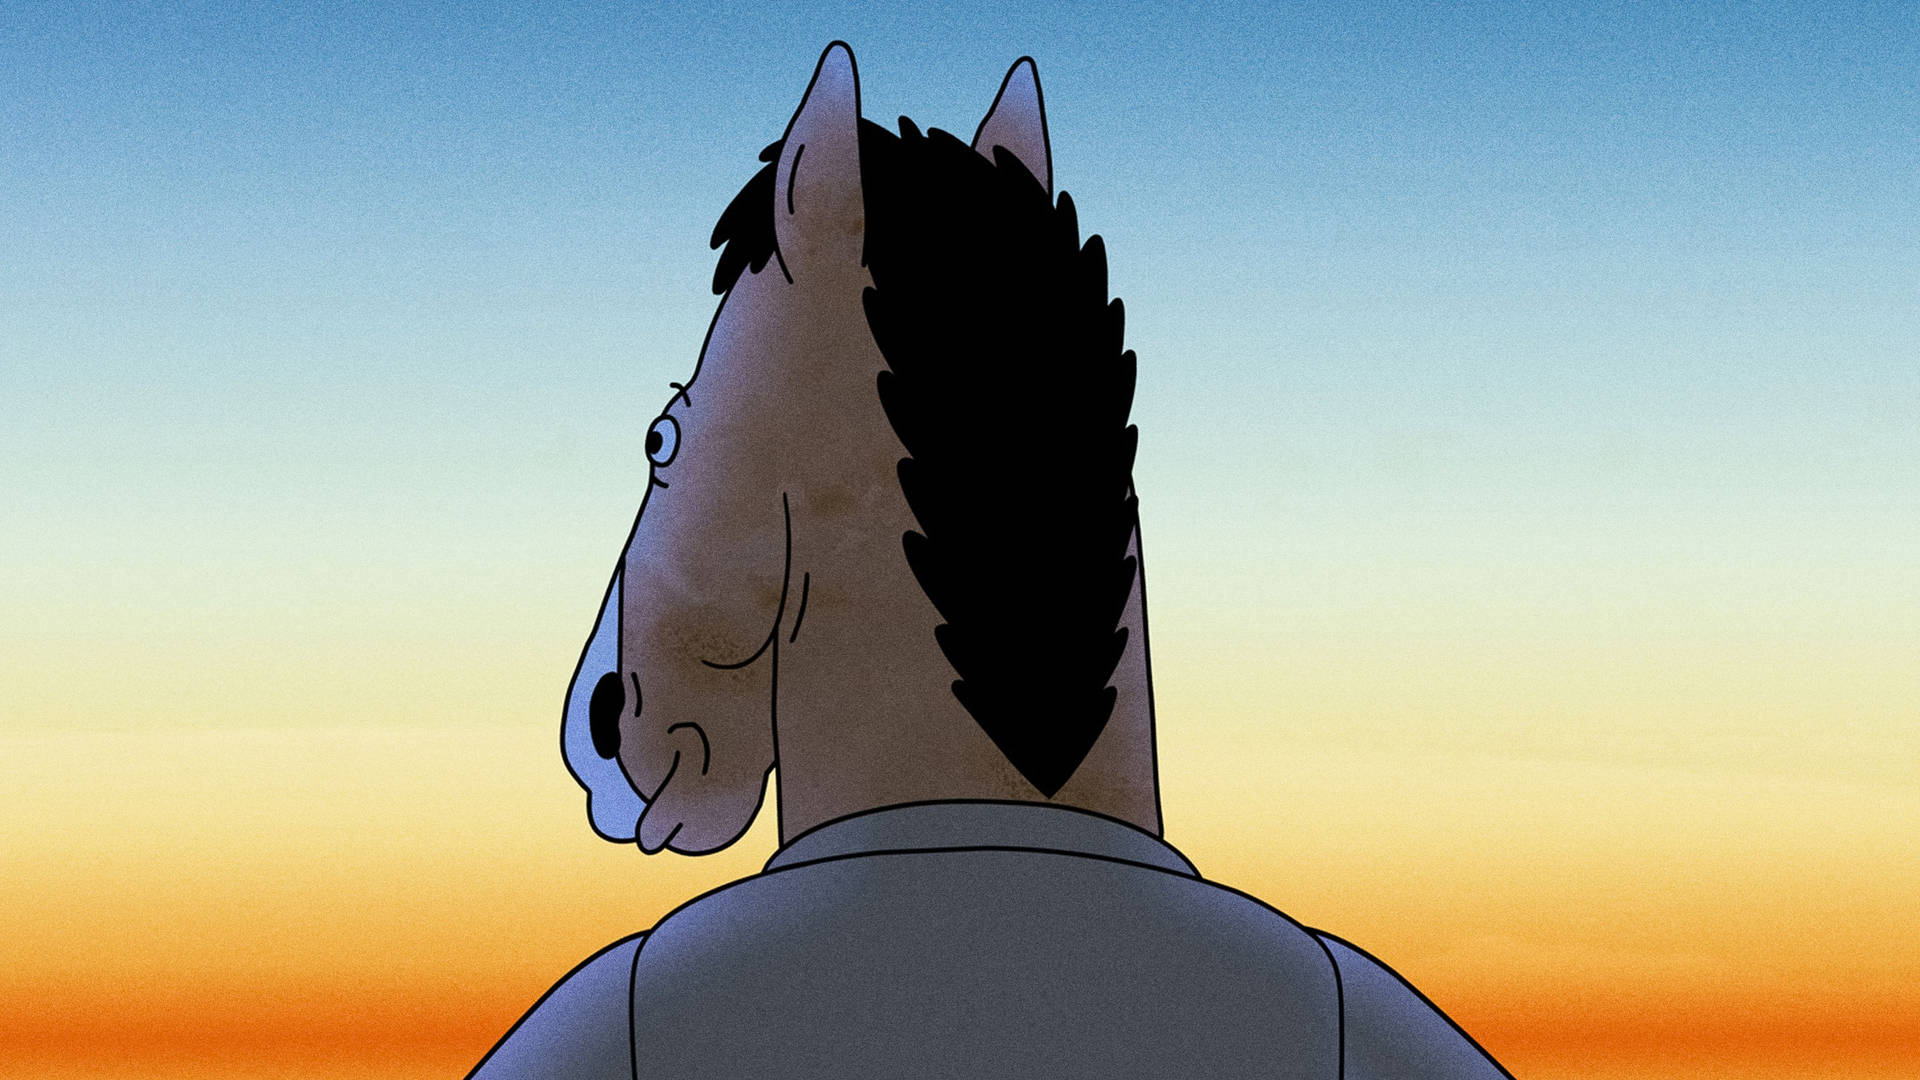 Bojack Horseman In Silhouette. Background